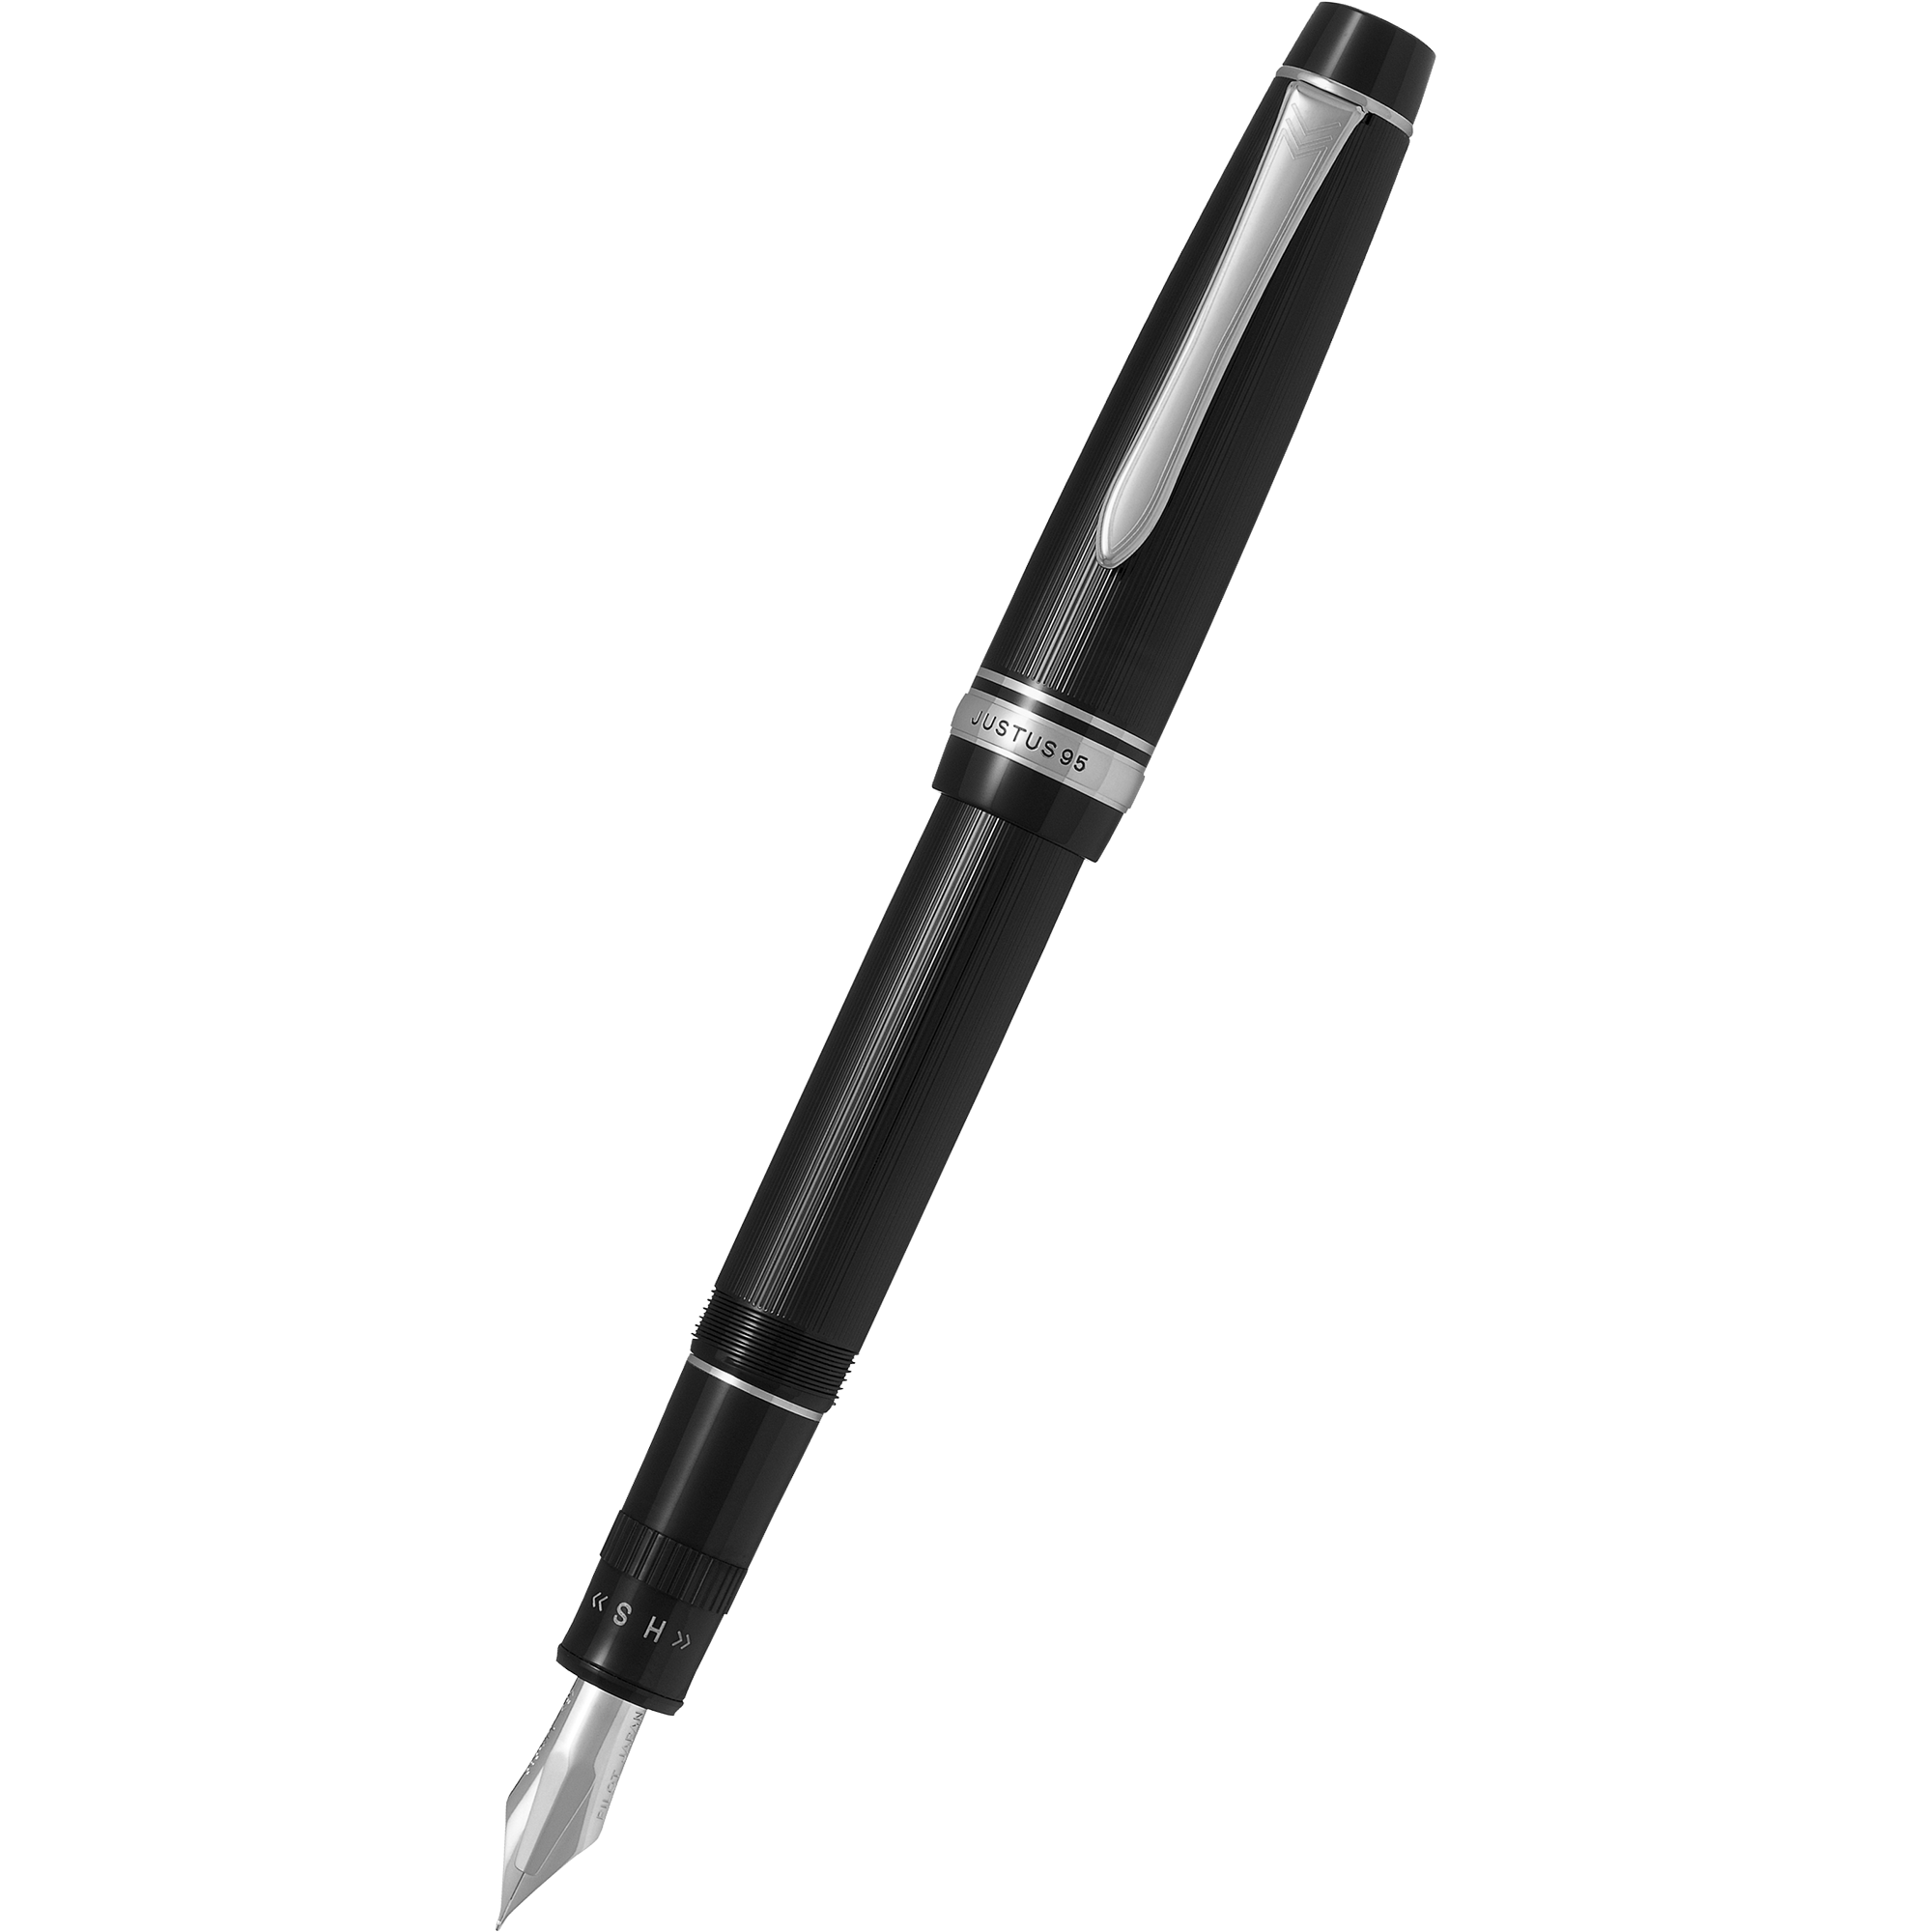 Pilot Justus 95 Fountain Pen - Black - Rhodium Trim-Pen Boutique Ltd